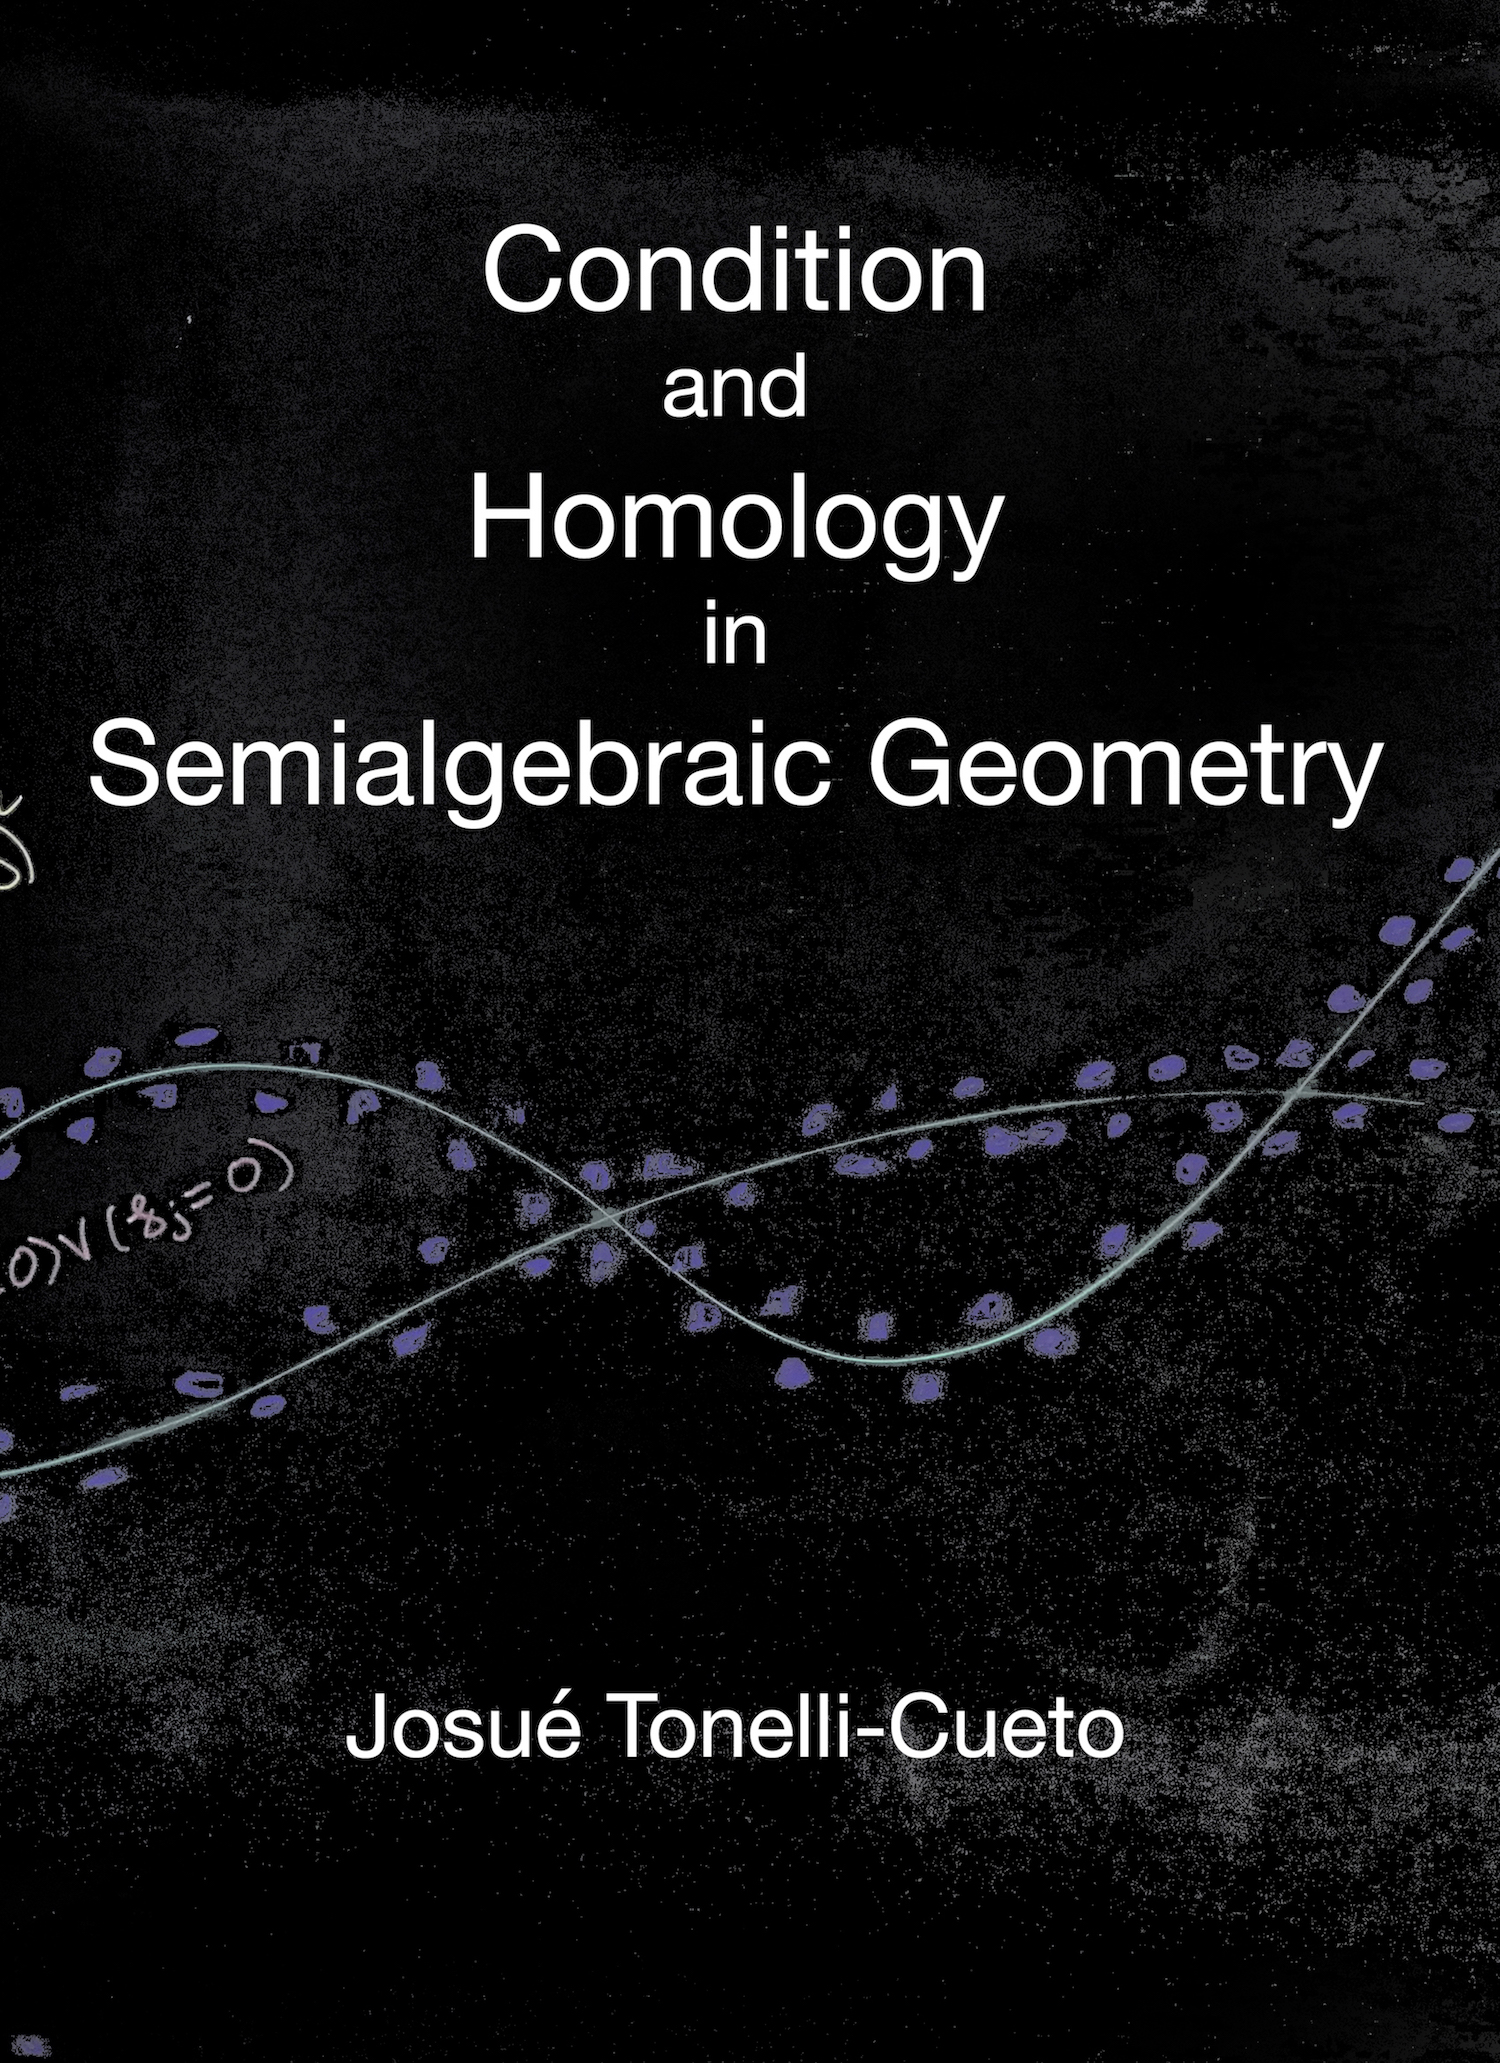 Portada de Conditionand Homology in Semialgebraic Geometry por Josué Tonelli Cueto